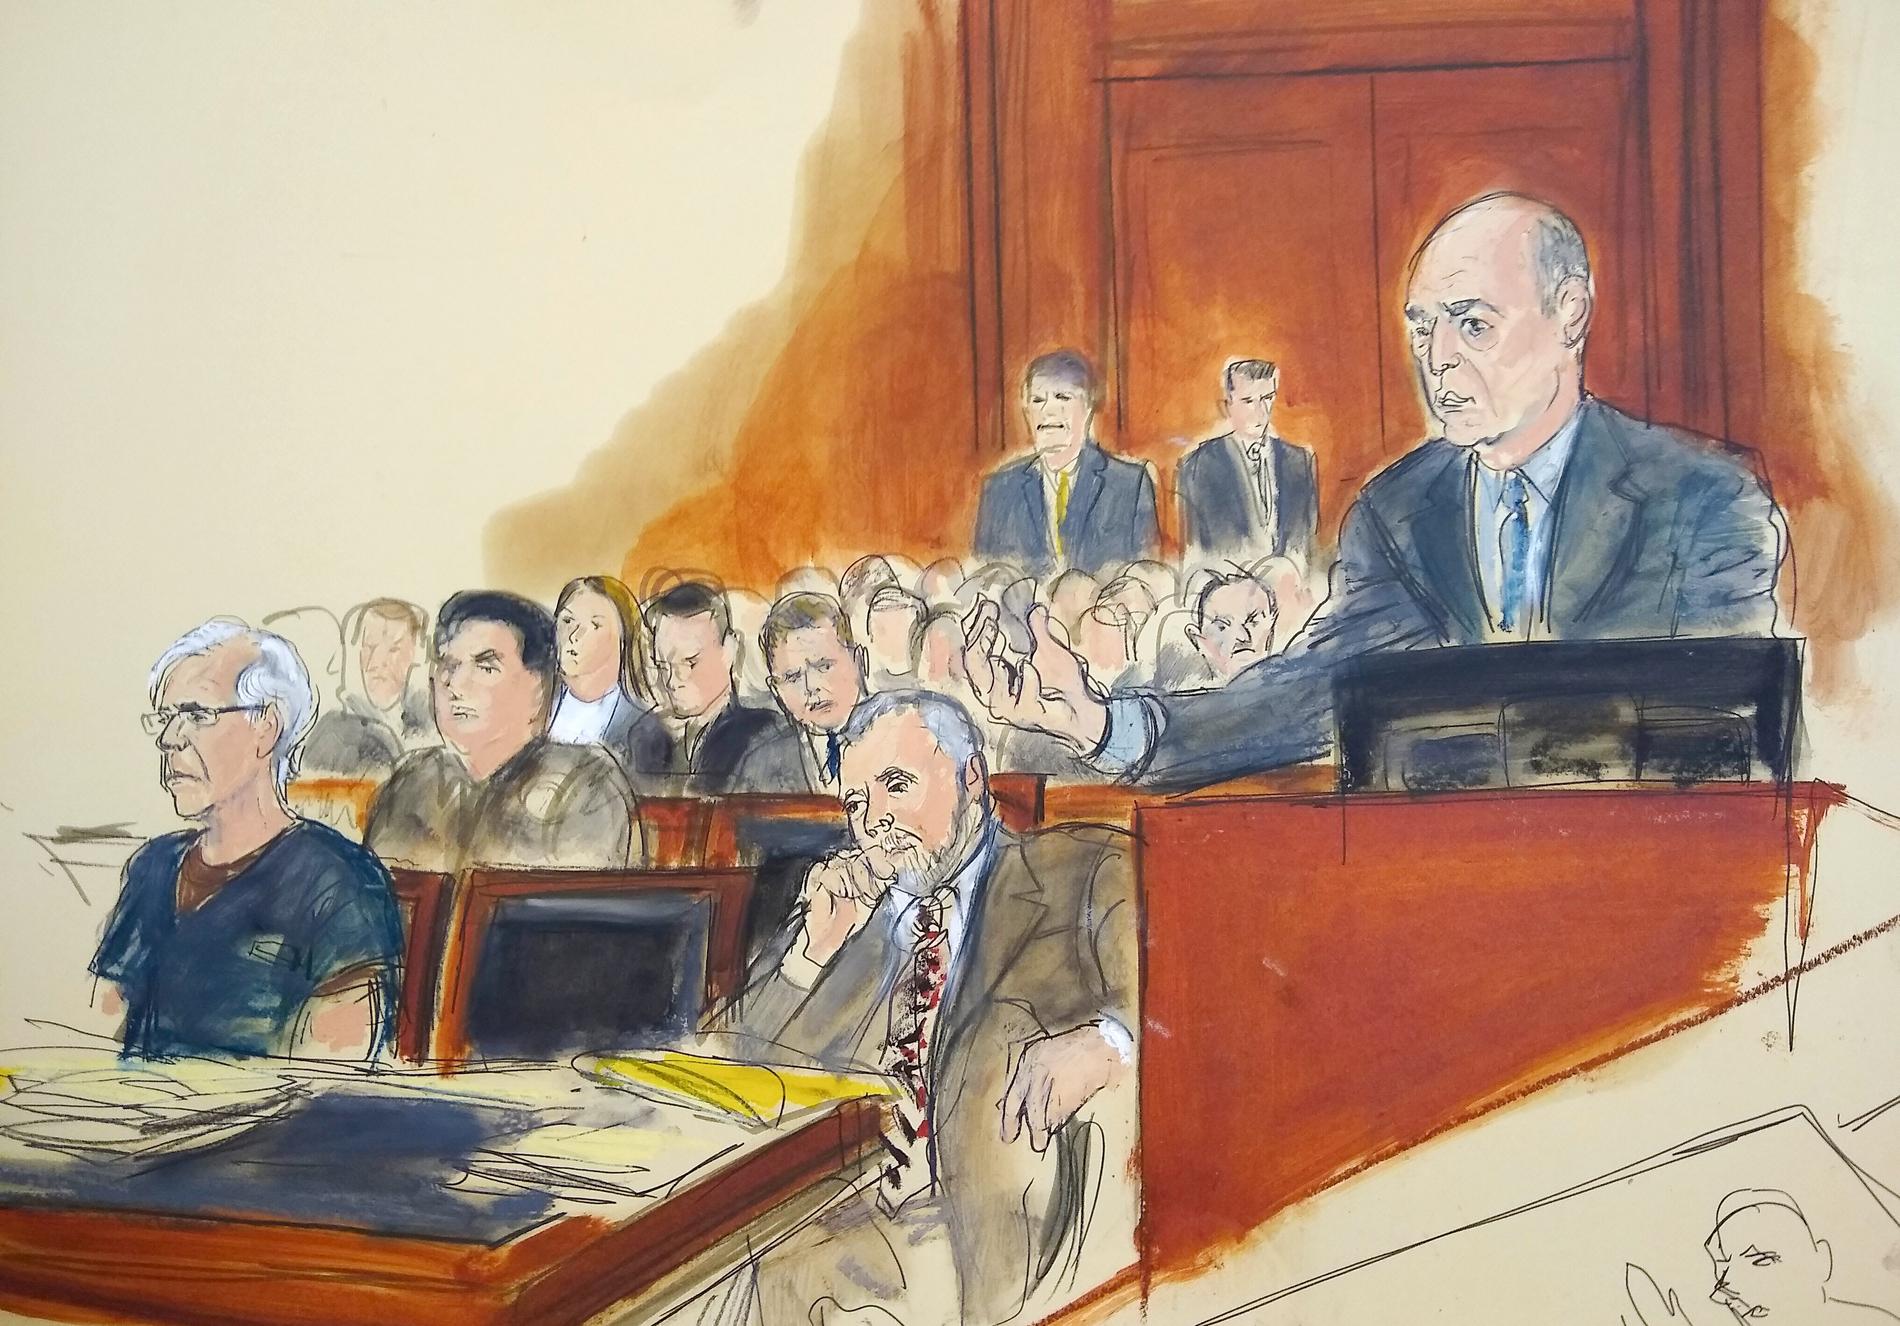 Jeffrey Epstein (längst till vänster) i en teckning från ett av hans framträdande i domstol i juli. Knappt en månad senare hittades han död i sin cell. Arkivbild.